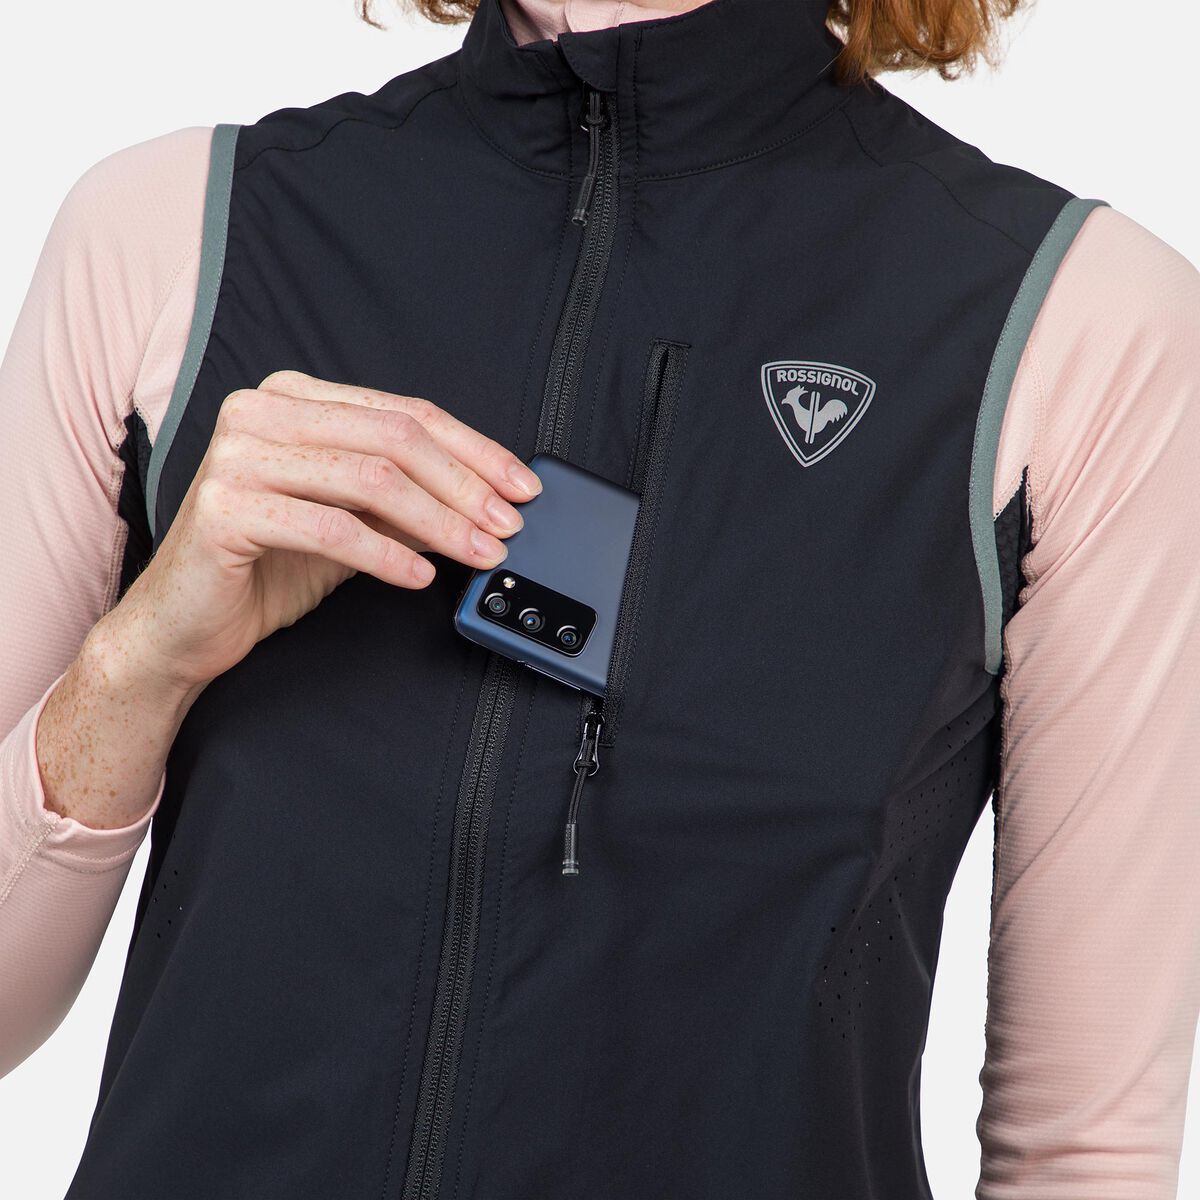 Rossignol Women's Active Versatile XC Ski Vest black